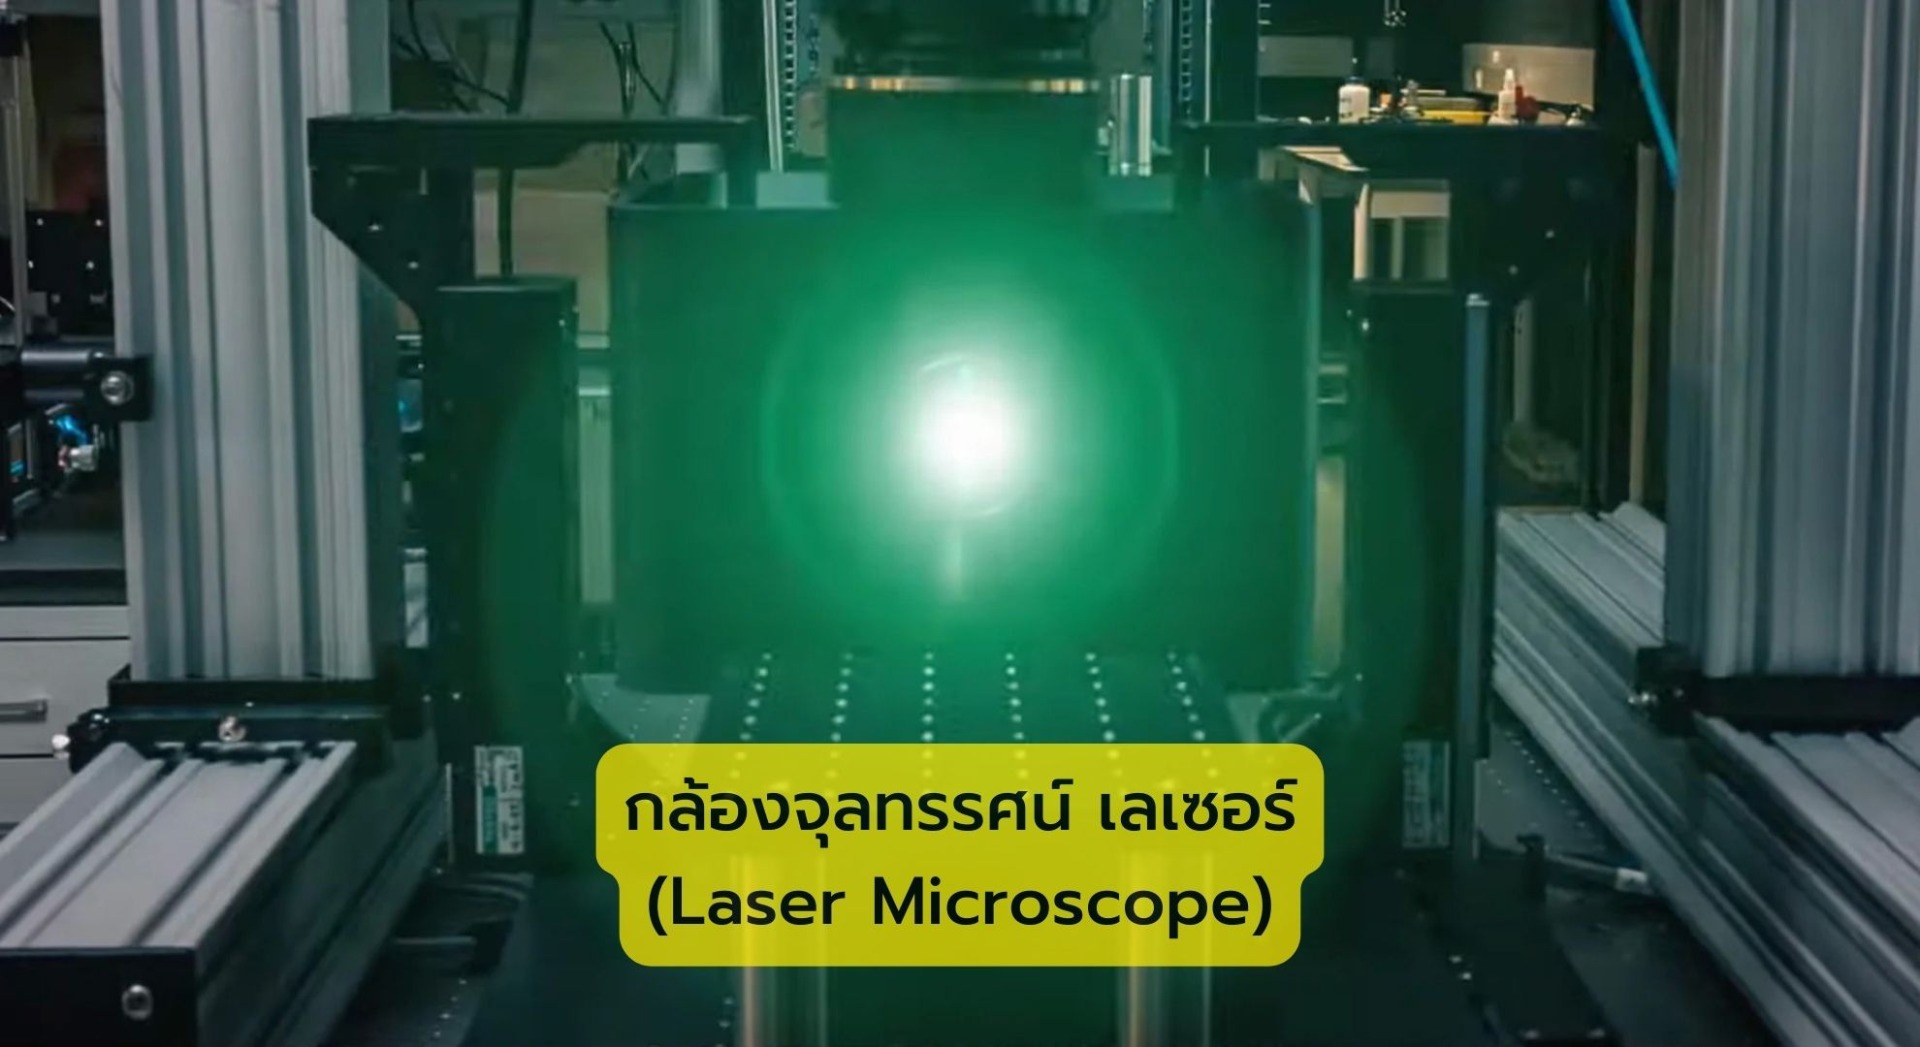 กล้องจุลทรรศน์ เลเซอร์ (Laser Microscope)